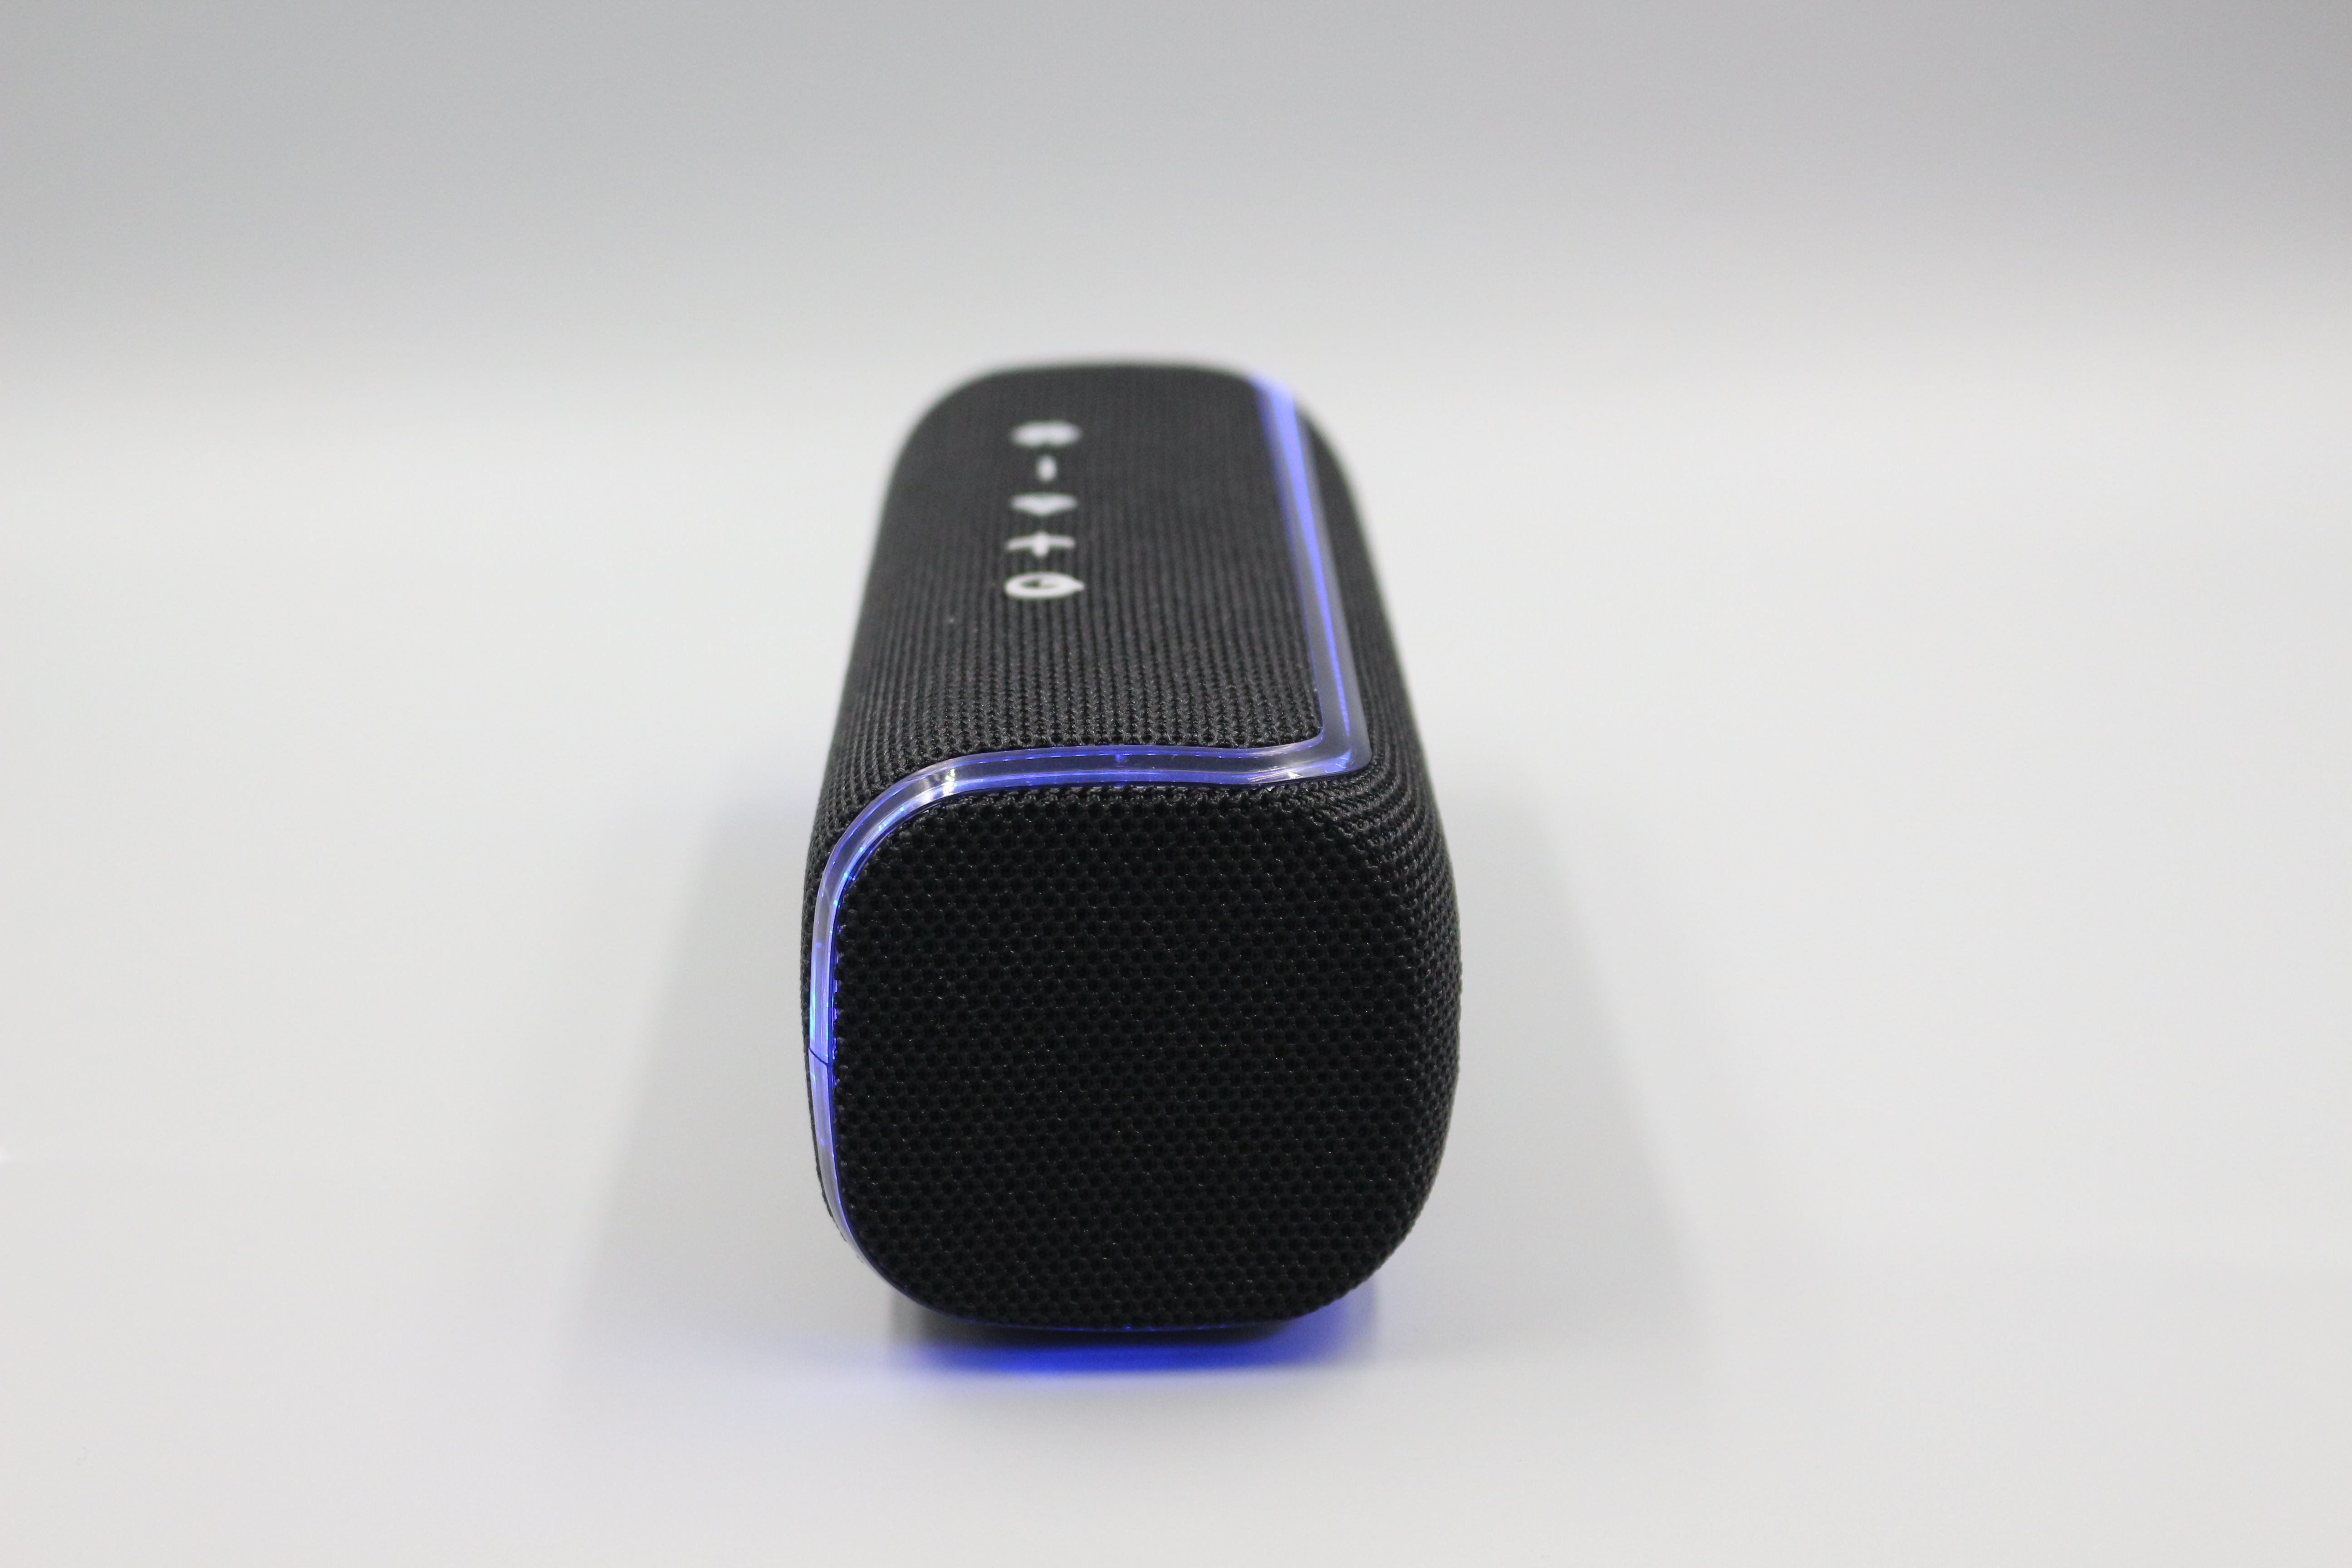 Schwarz Speaker LED BLAUPUNKT - Bluetooth - Schwarz 20 - Beleuchtung Watt Lautsprecher, Party BLP3920 -